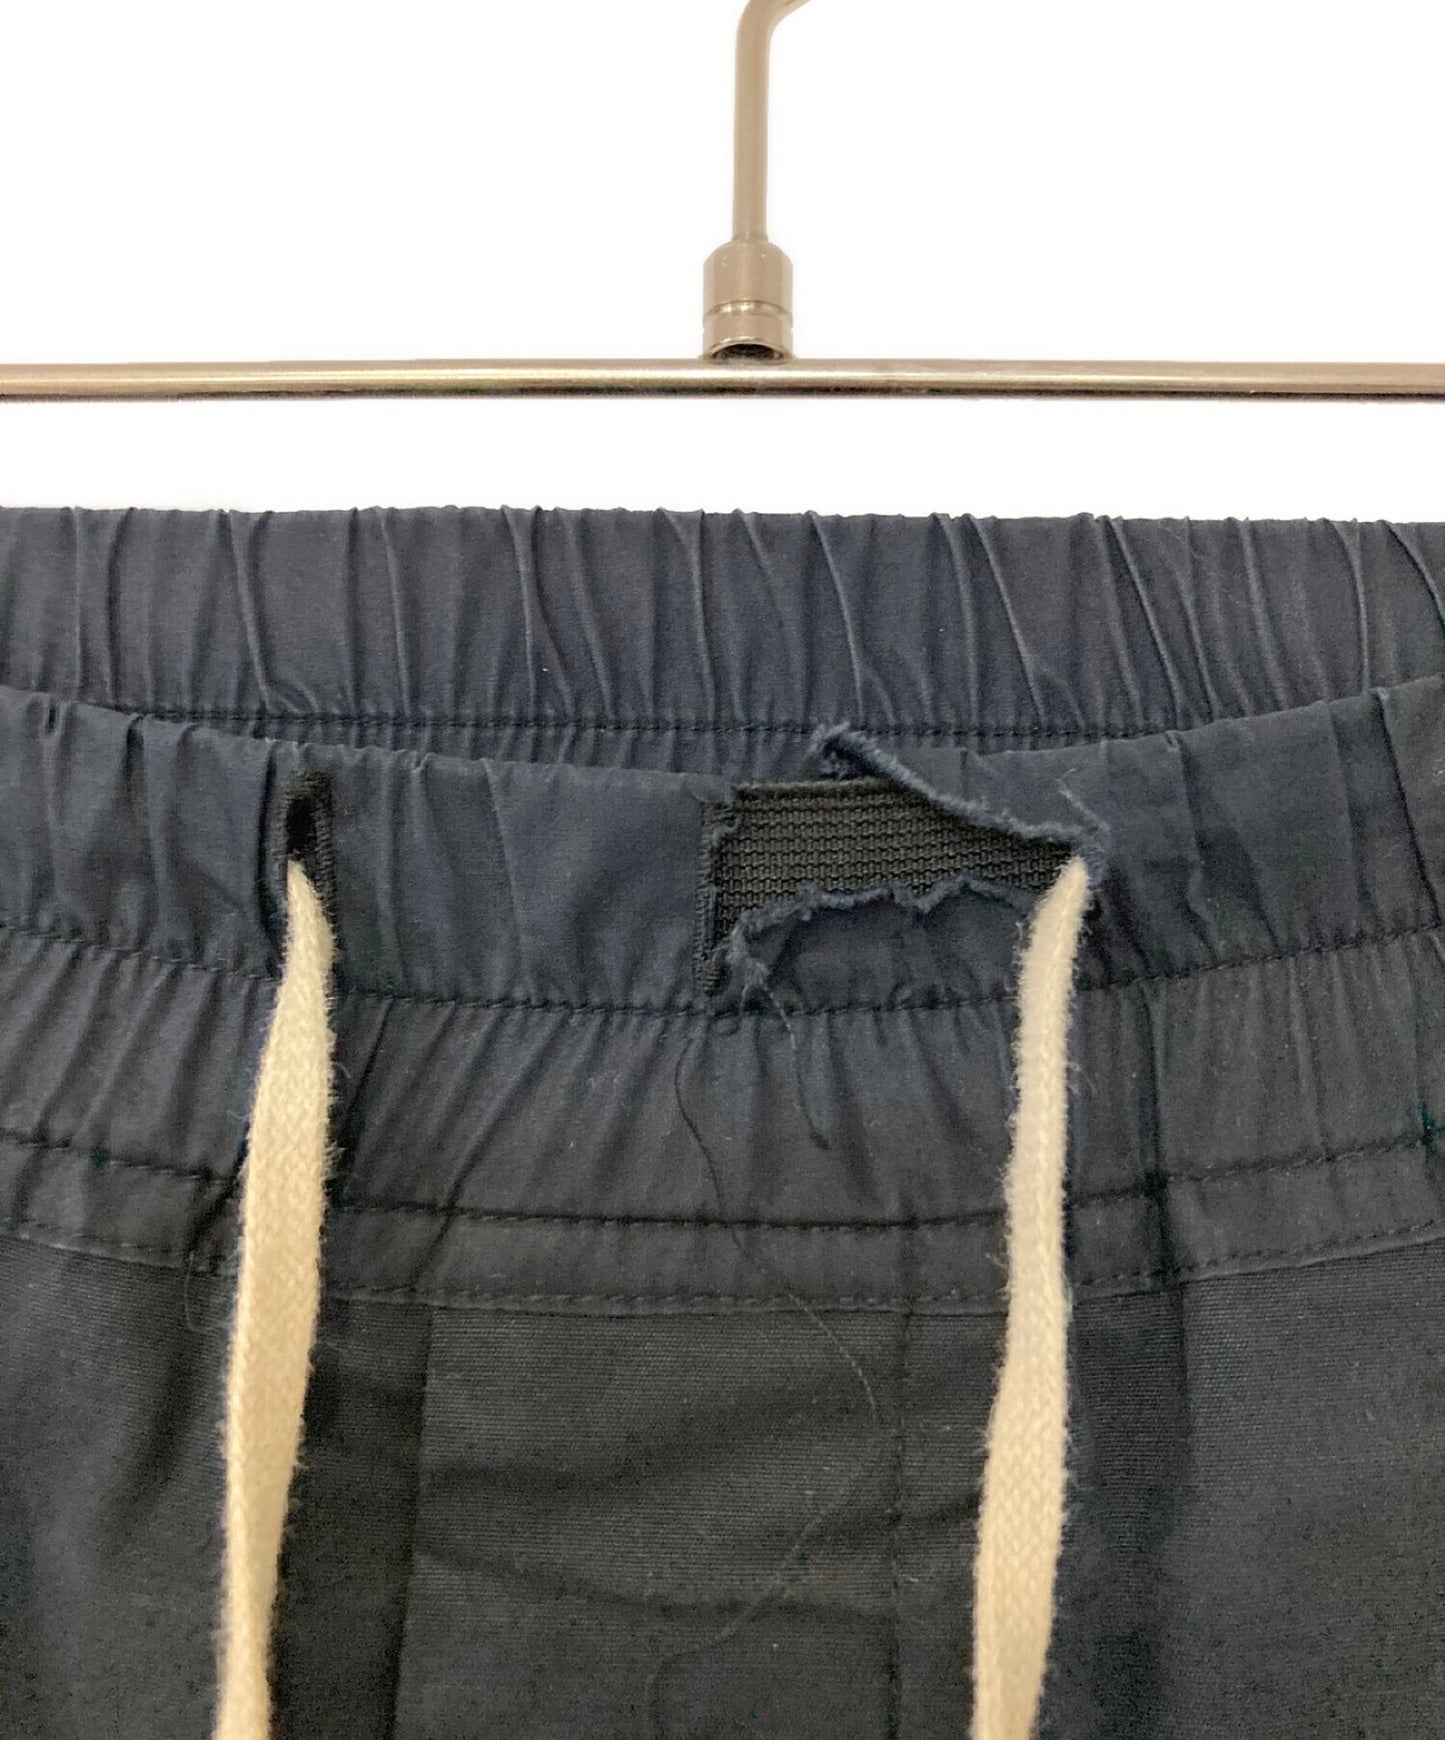 [Pre-owned] RICK OWENS sarouel pants RU14S1380-TE